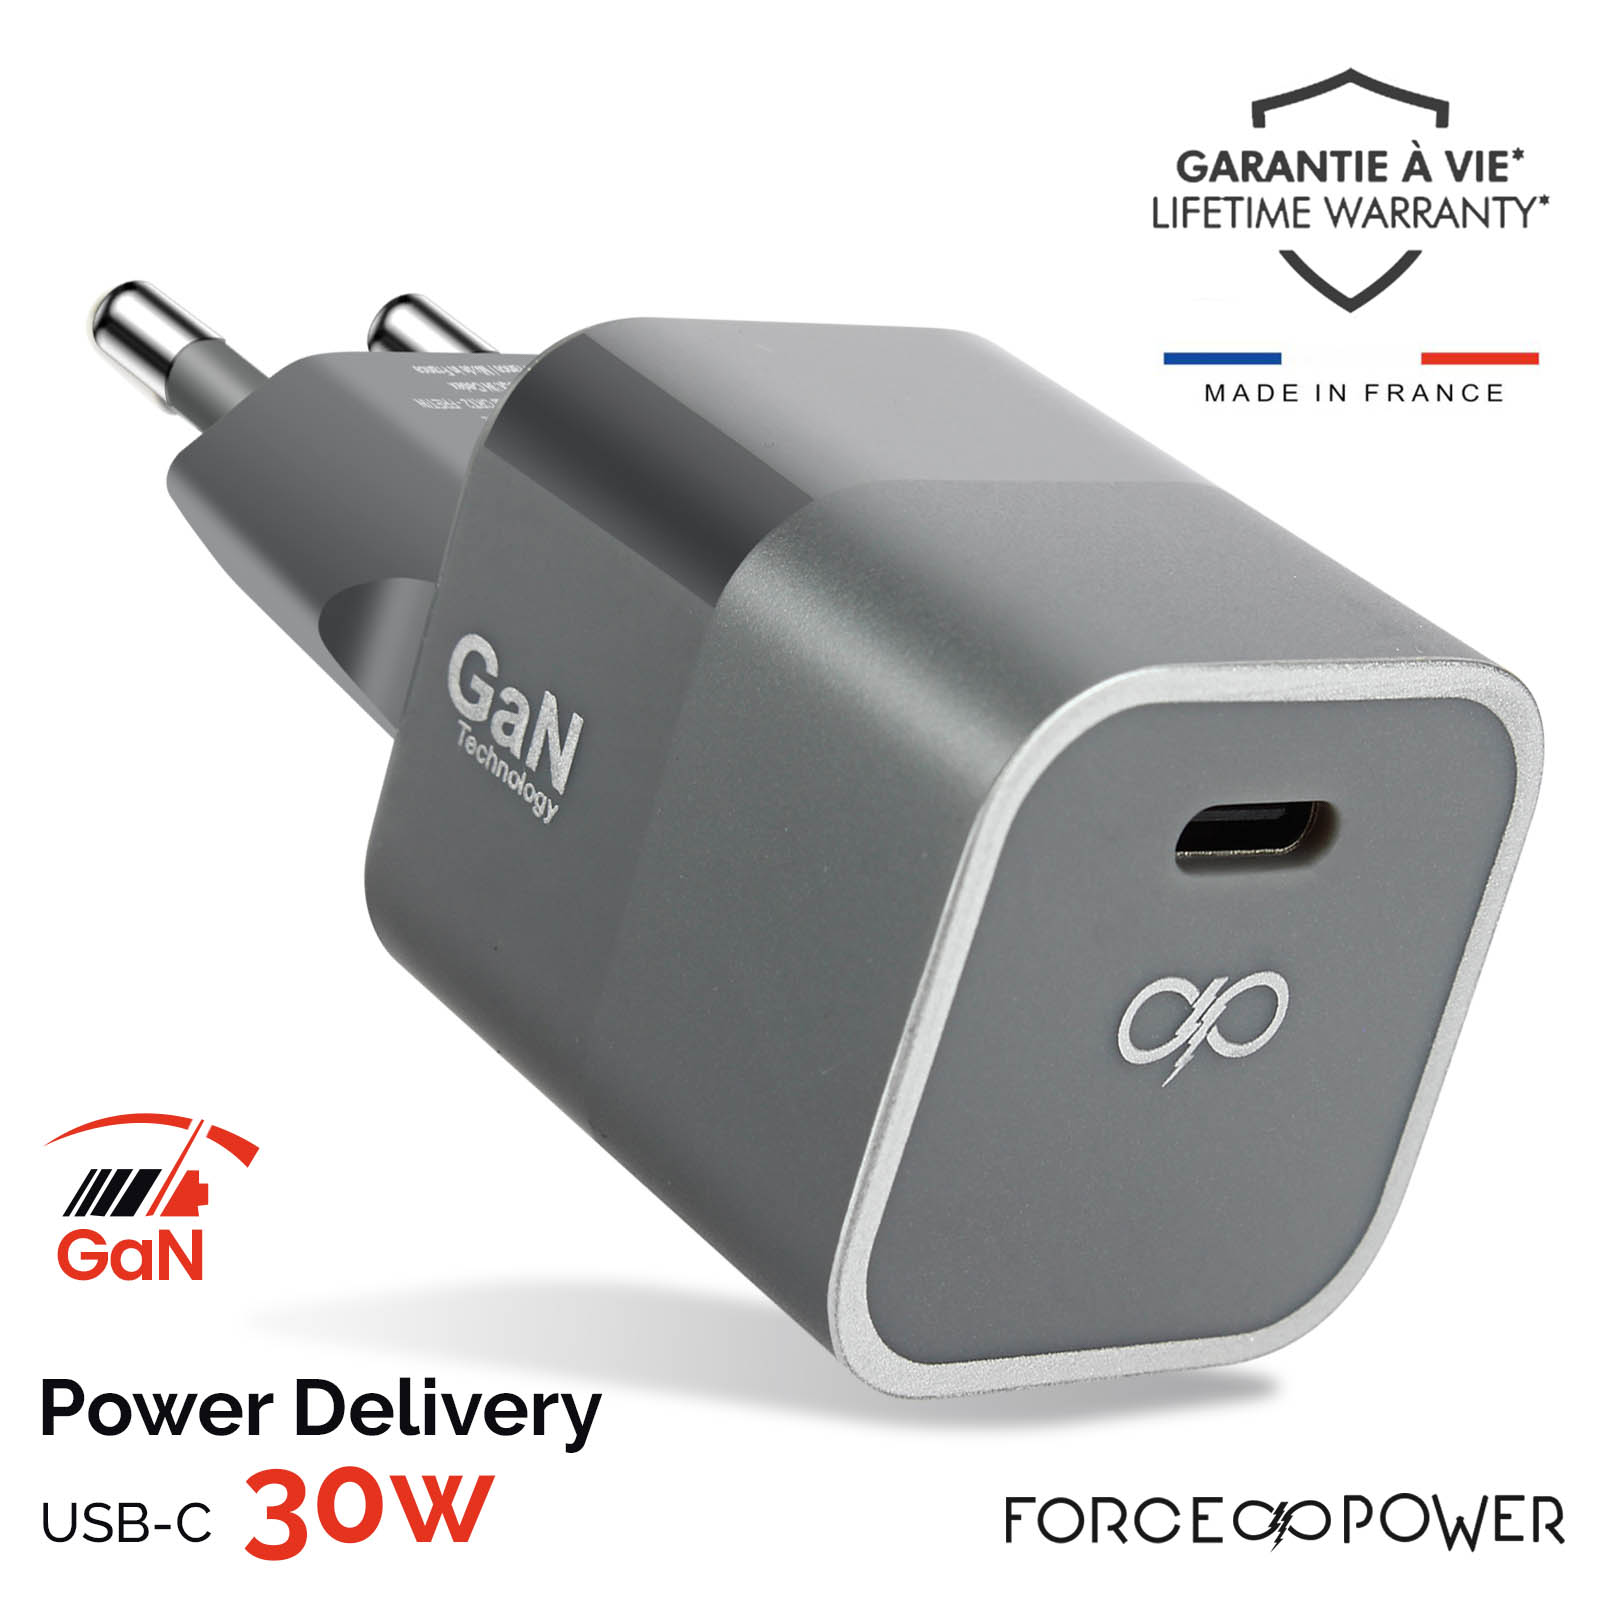 Cargador de Red GaN 30W, USB-C Power Delivery con Garantía de por Vida,  Force Power - Gris - Spain